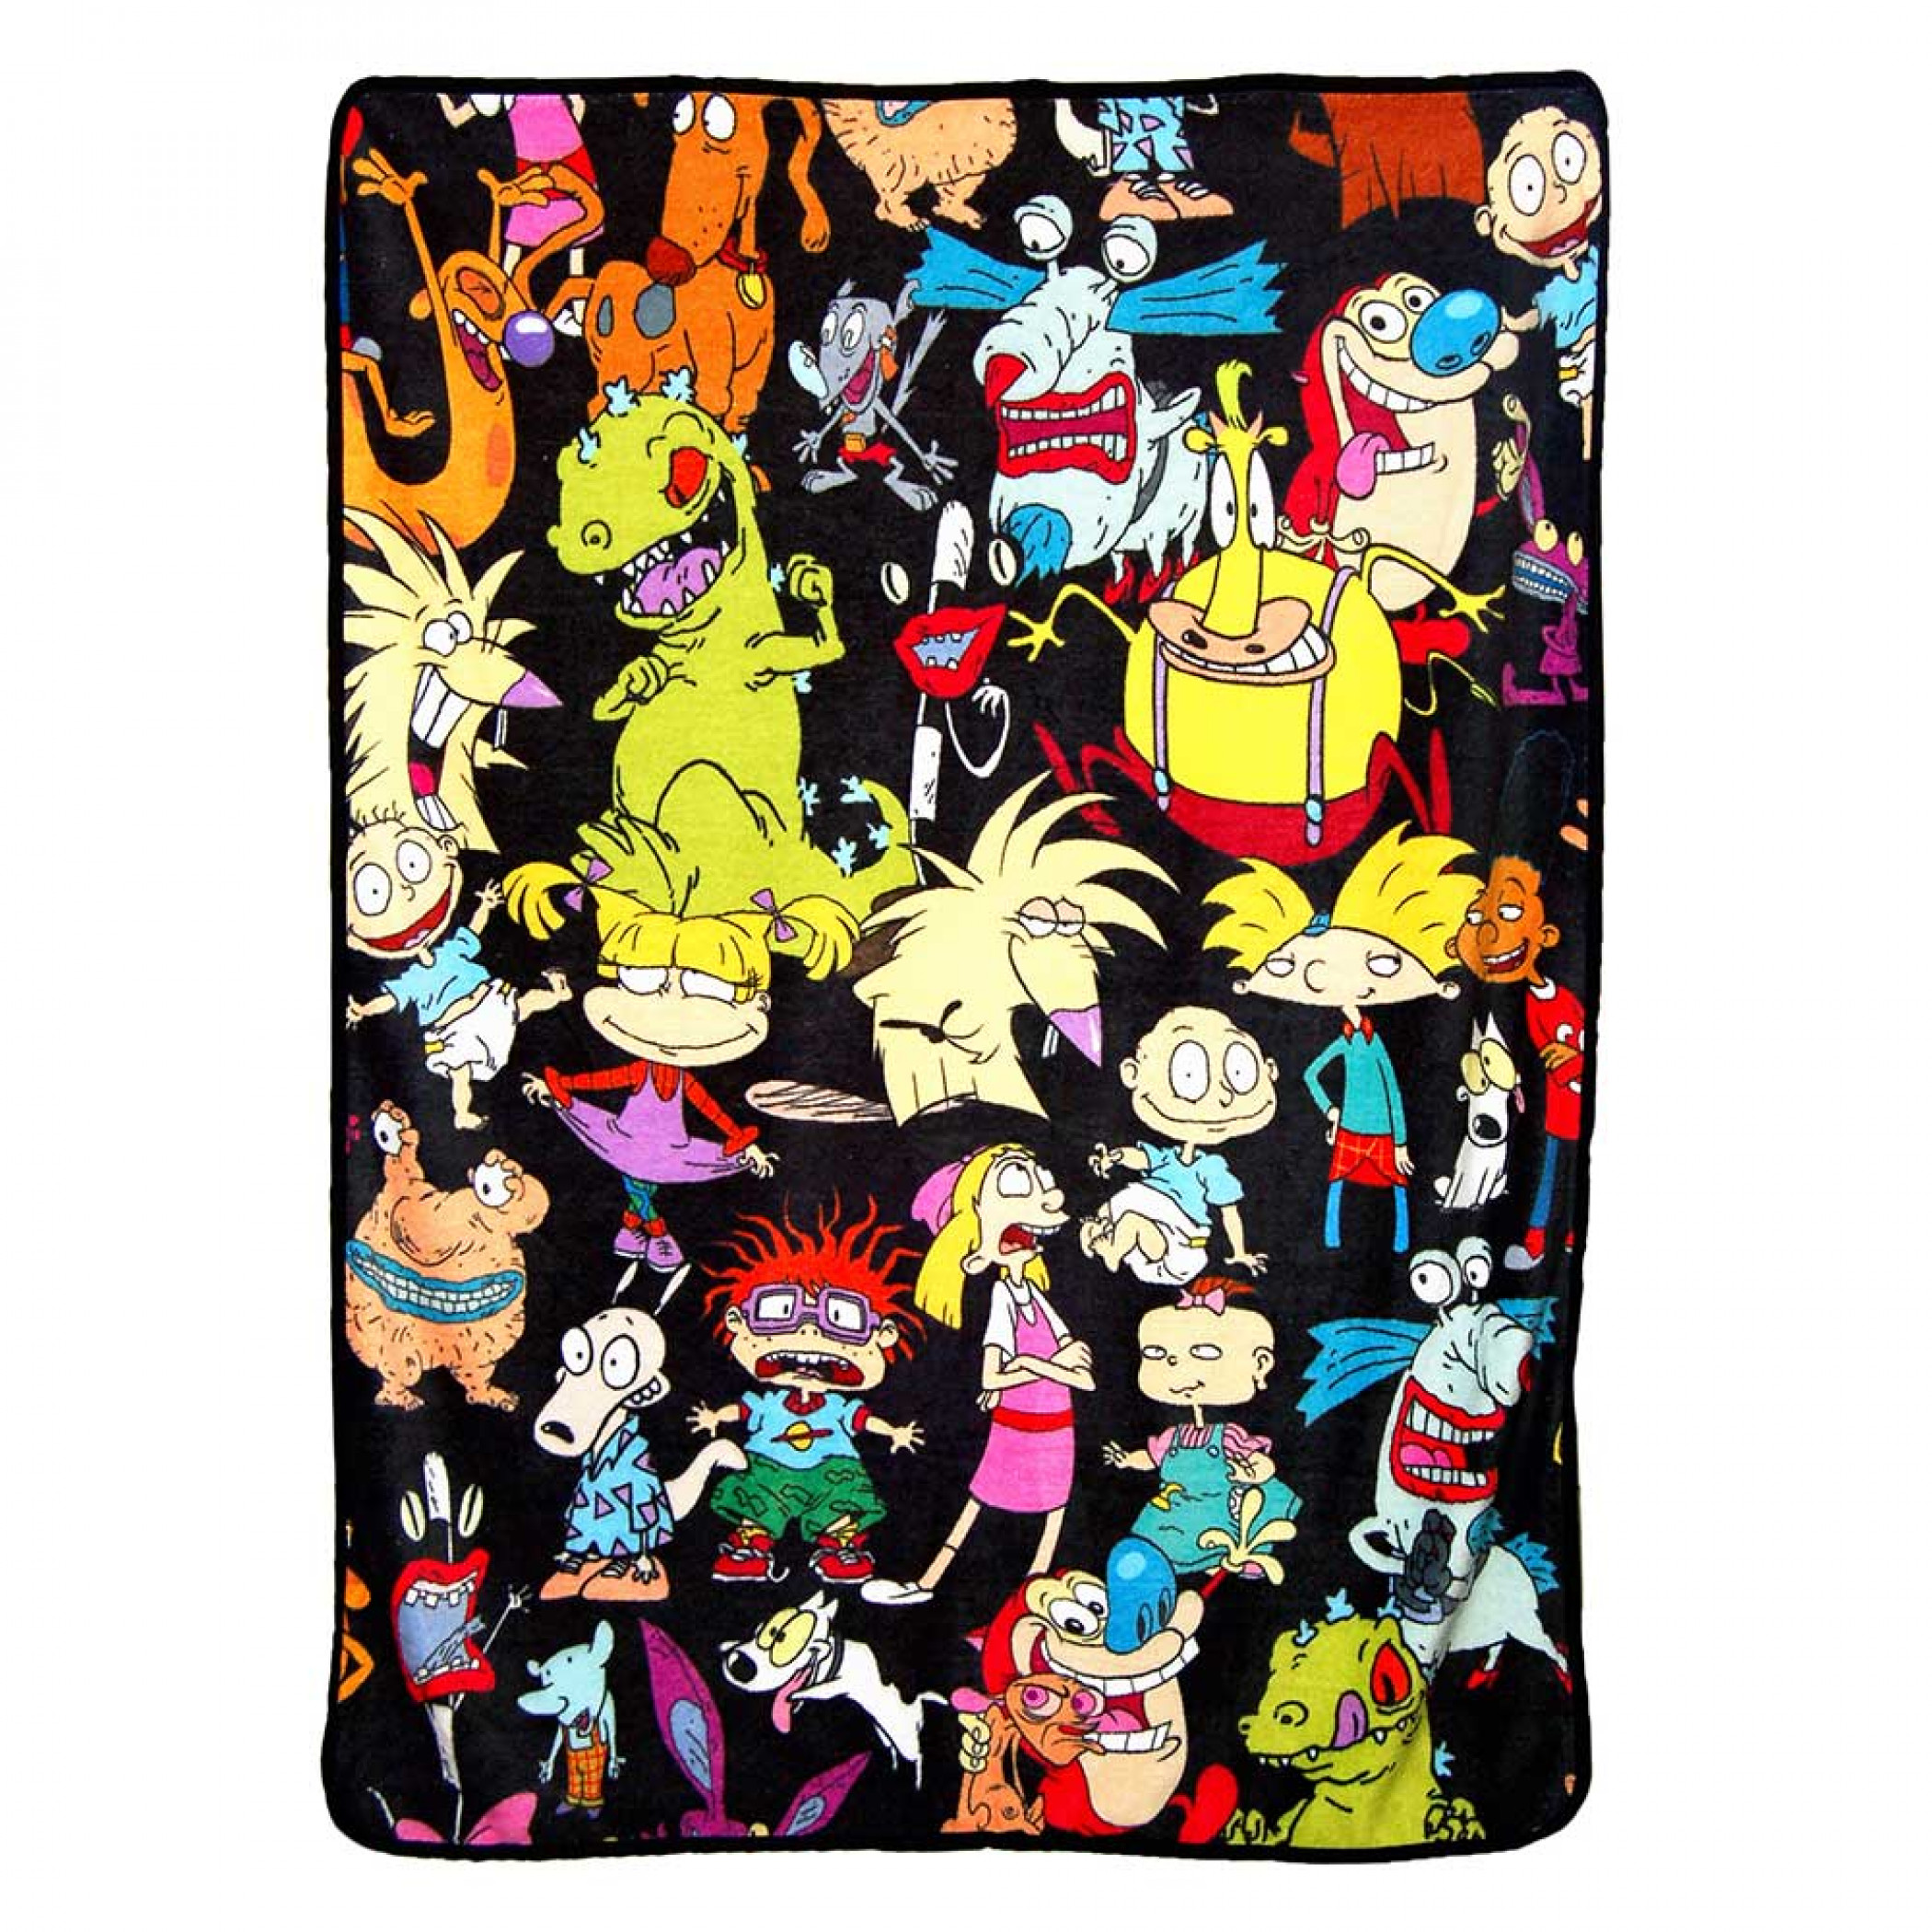 Nicktoons Micro Raschel 46"x 60" Throw Blanket